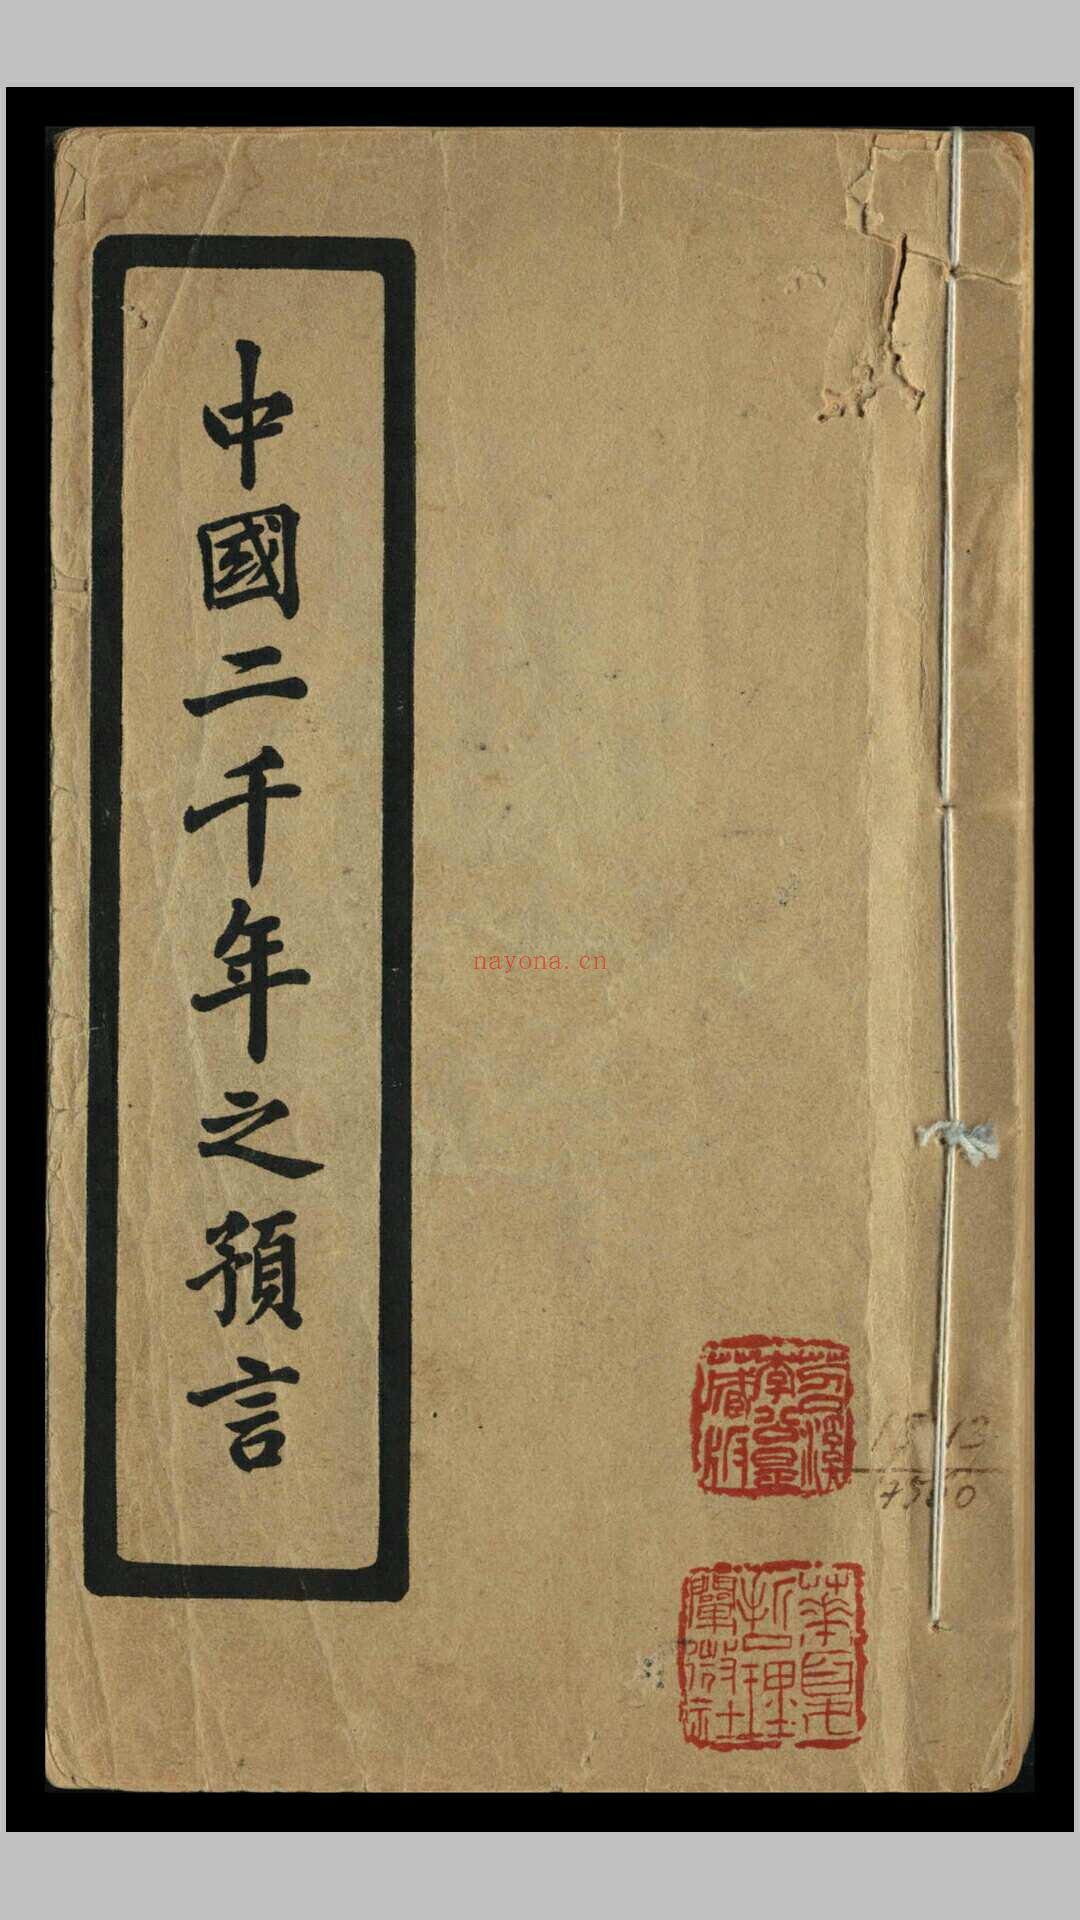 中国二千年之预言 刘伯温等着 金圣叹批评 (中国二千年之预言pdf)